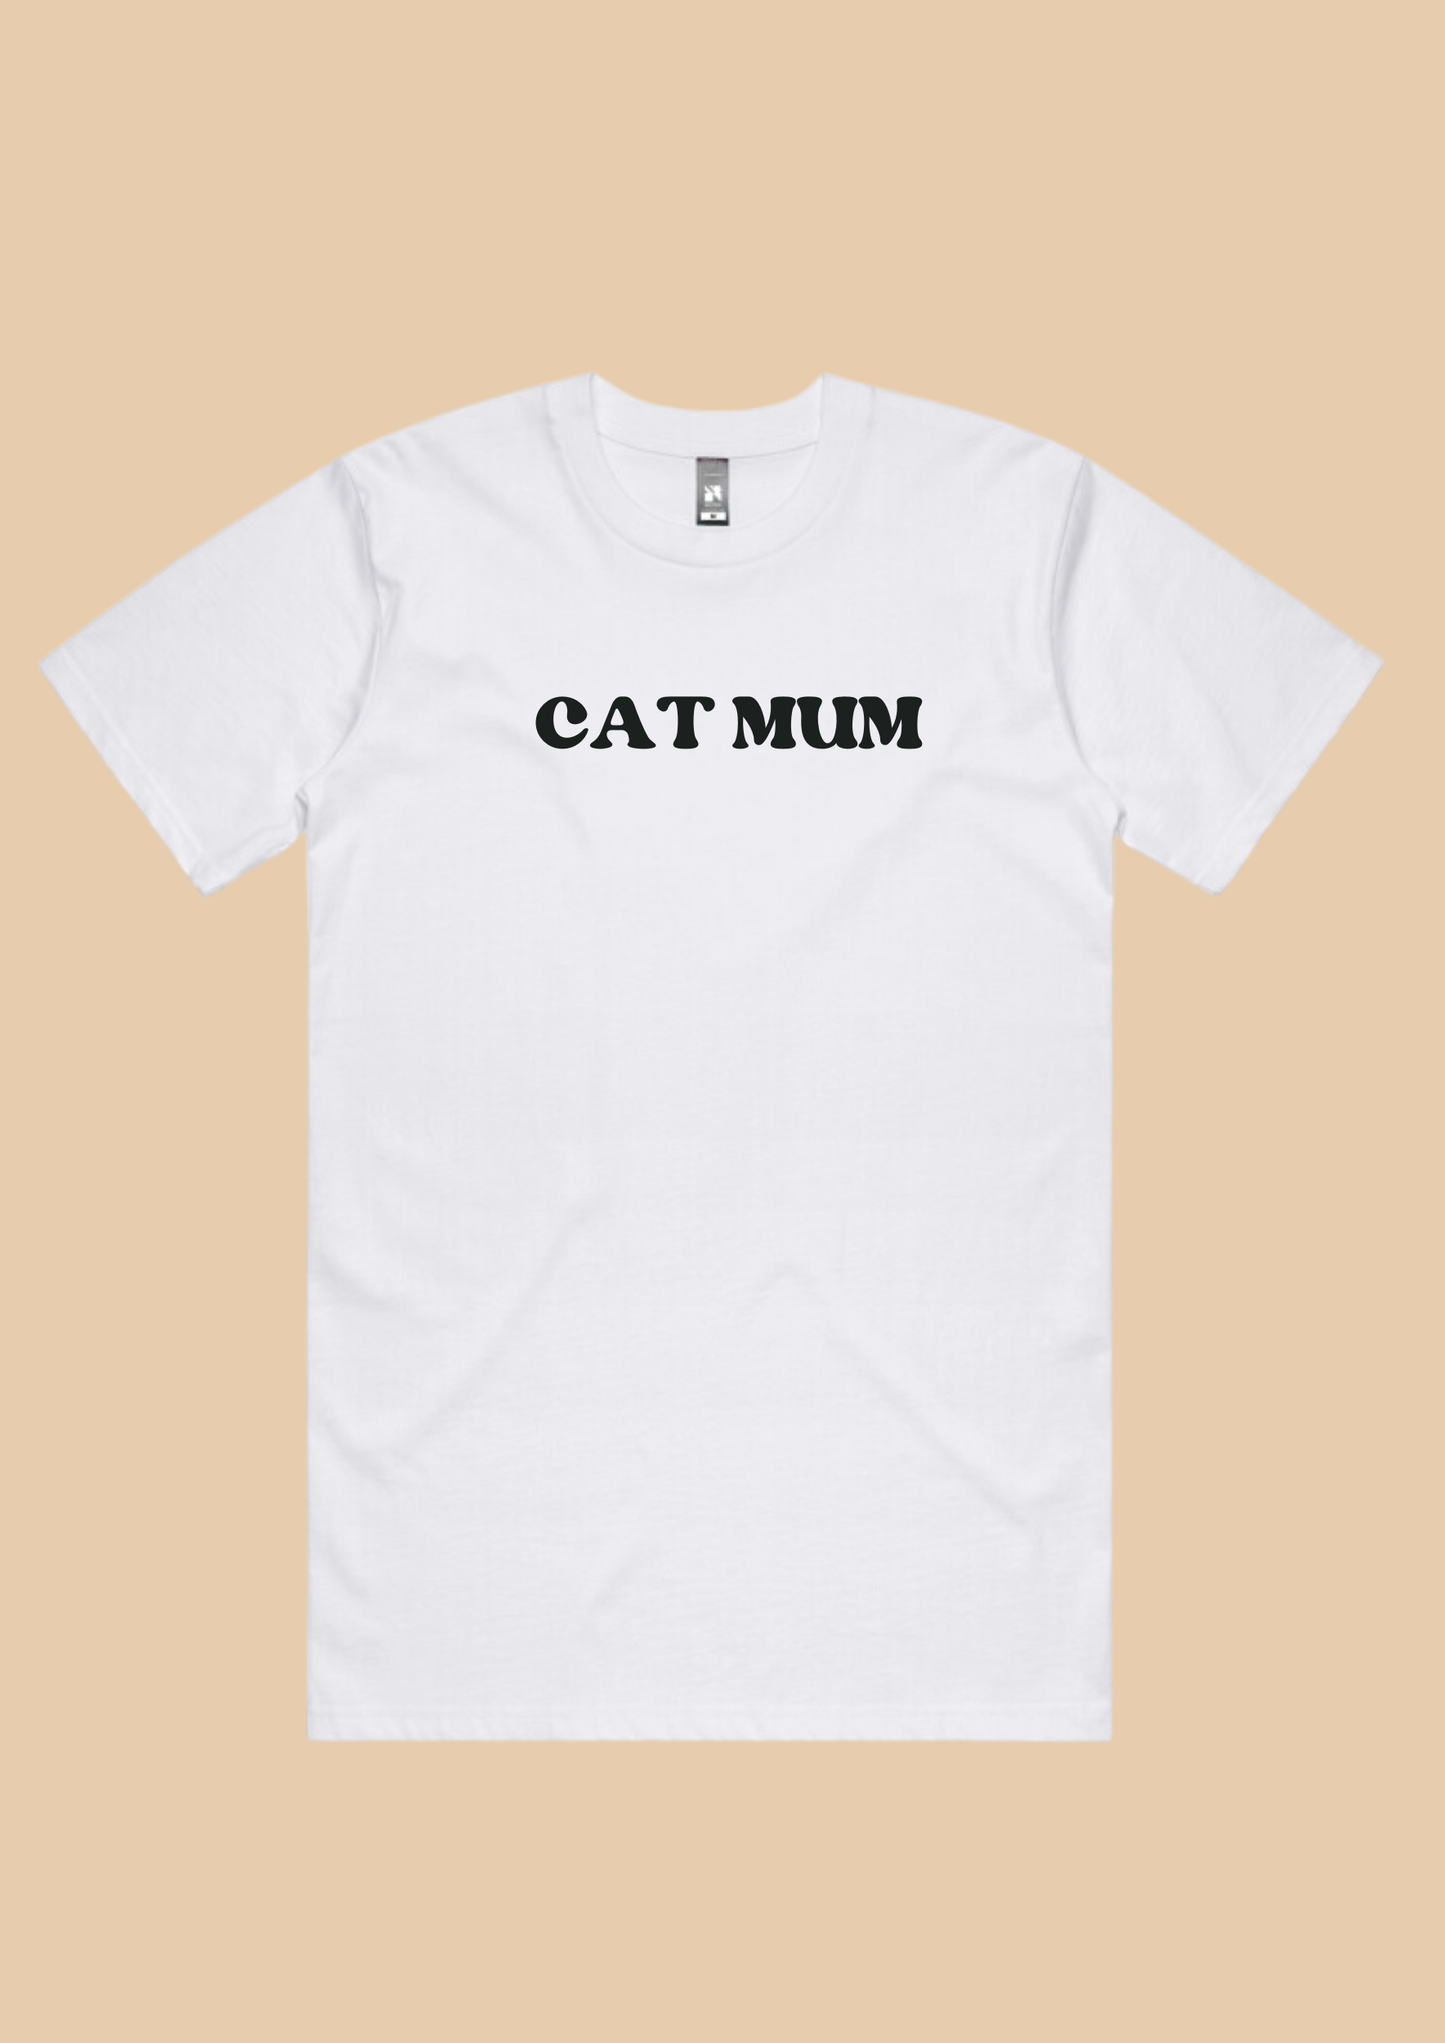 dog mum quote tshirts dog lover tshirts customisable custom dog mum gift